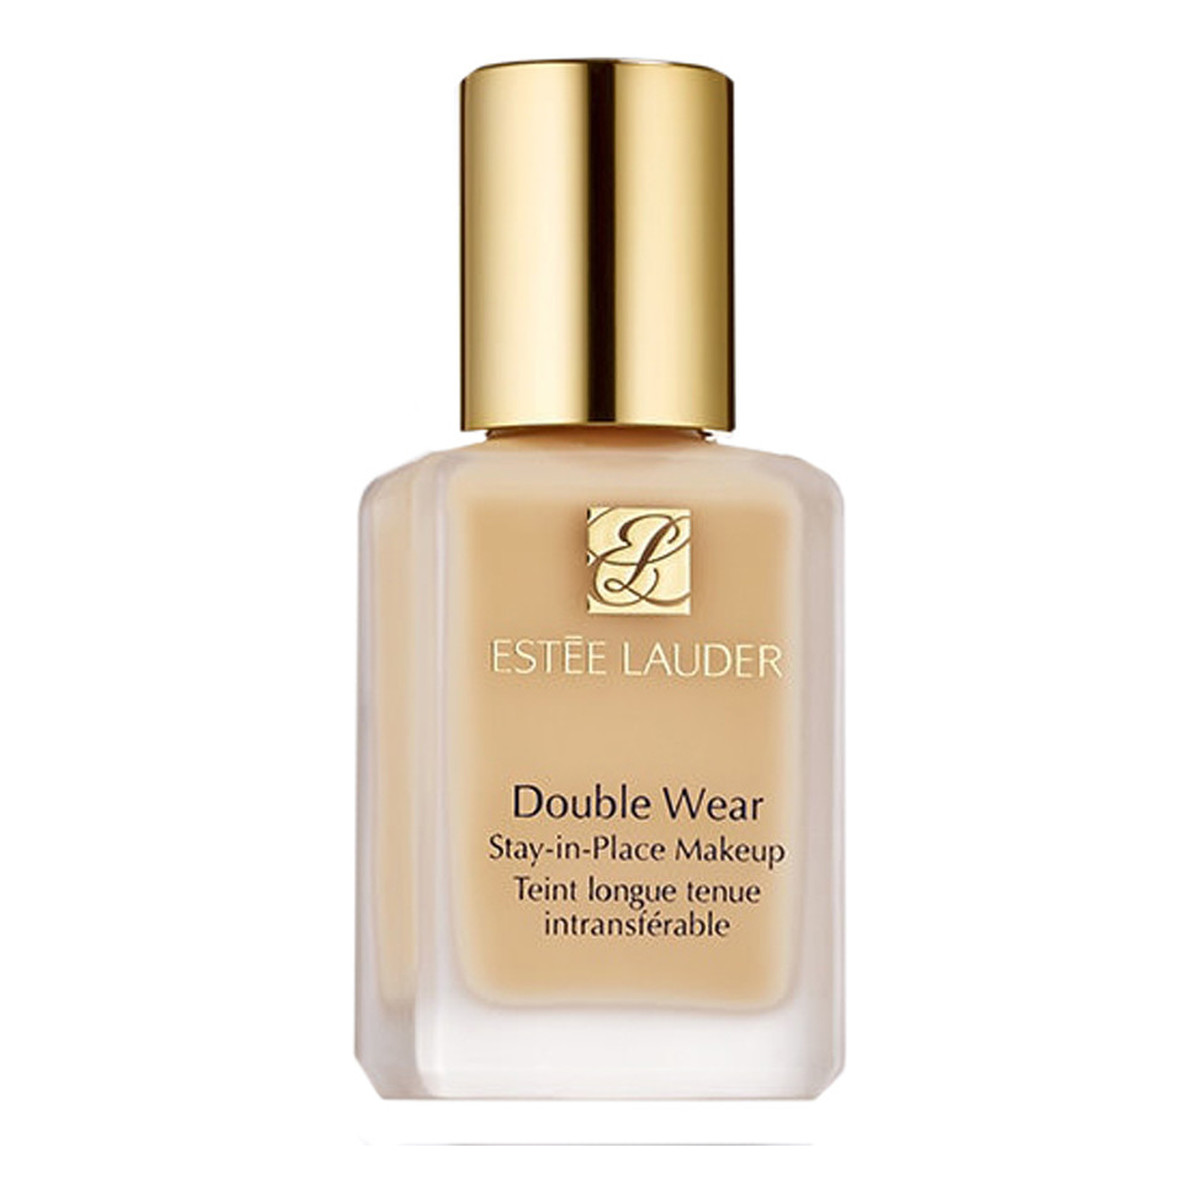 Estee Lauder Double Wear Stay In Place Makeup SPF10 Długotrwały podkład o przedłużonej trwałości 30ml